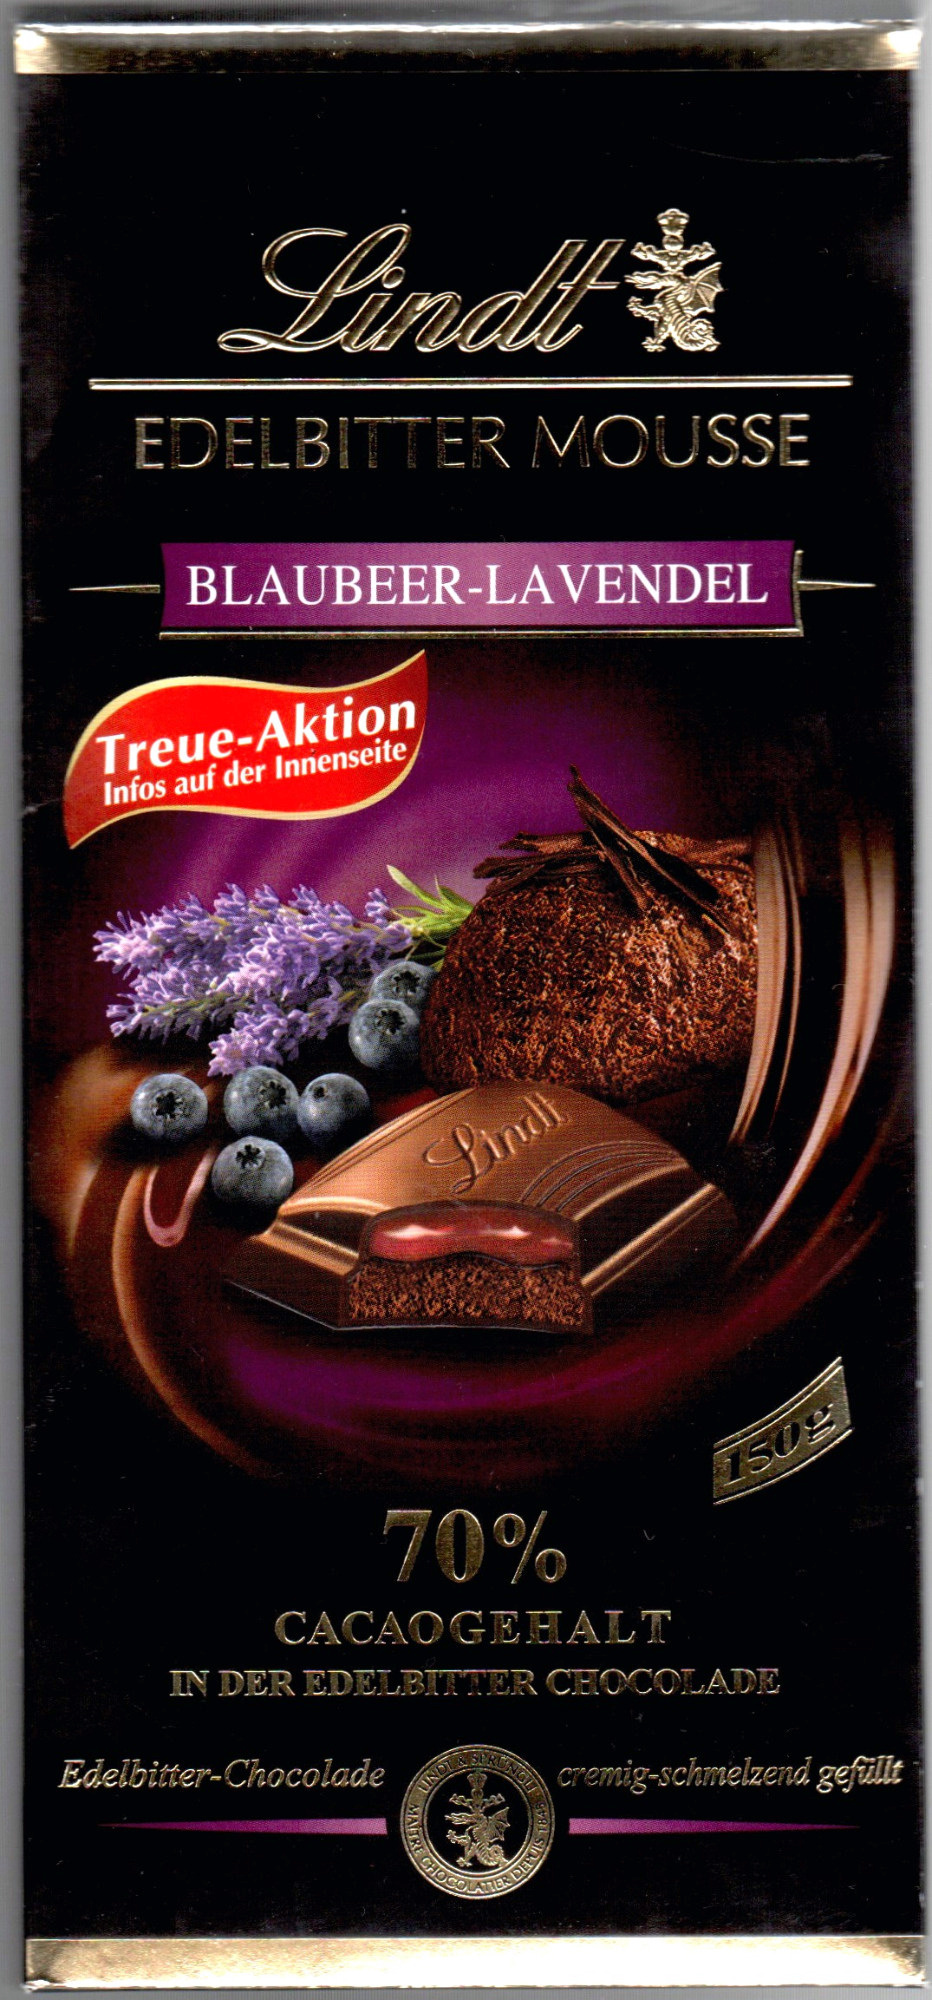 Edelbitter Mousse - Blaubeer-Lavendel - Product - de